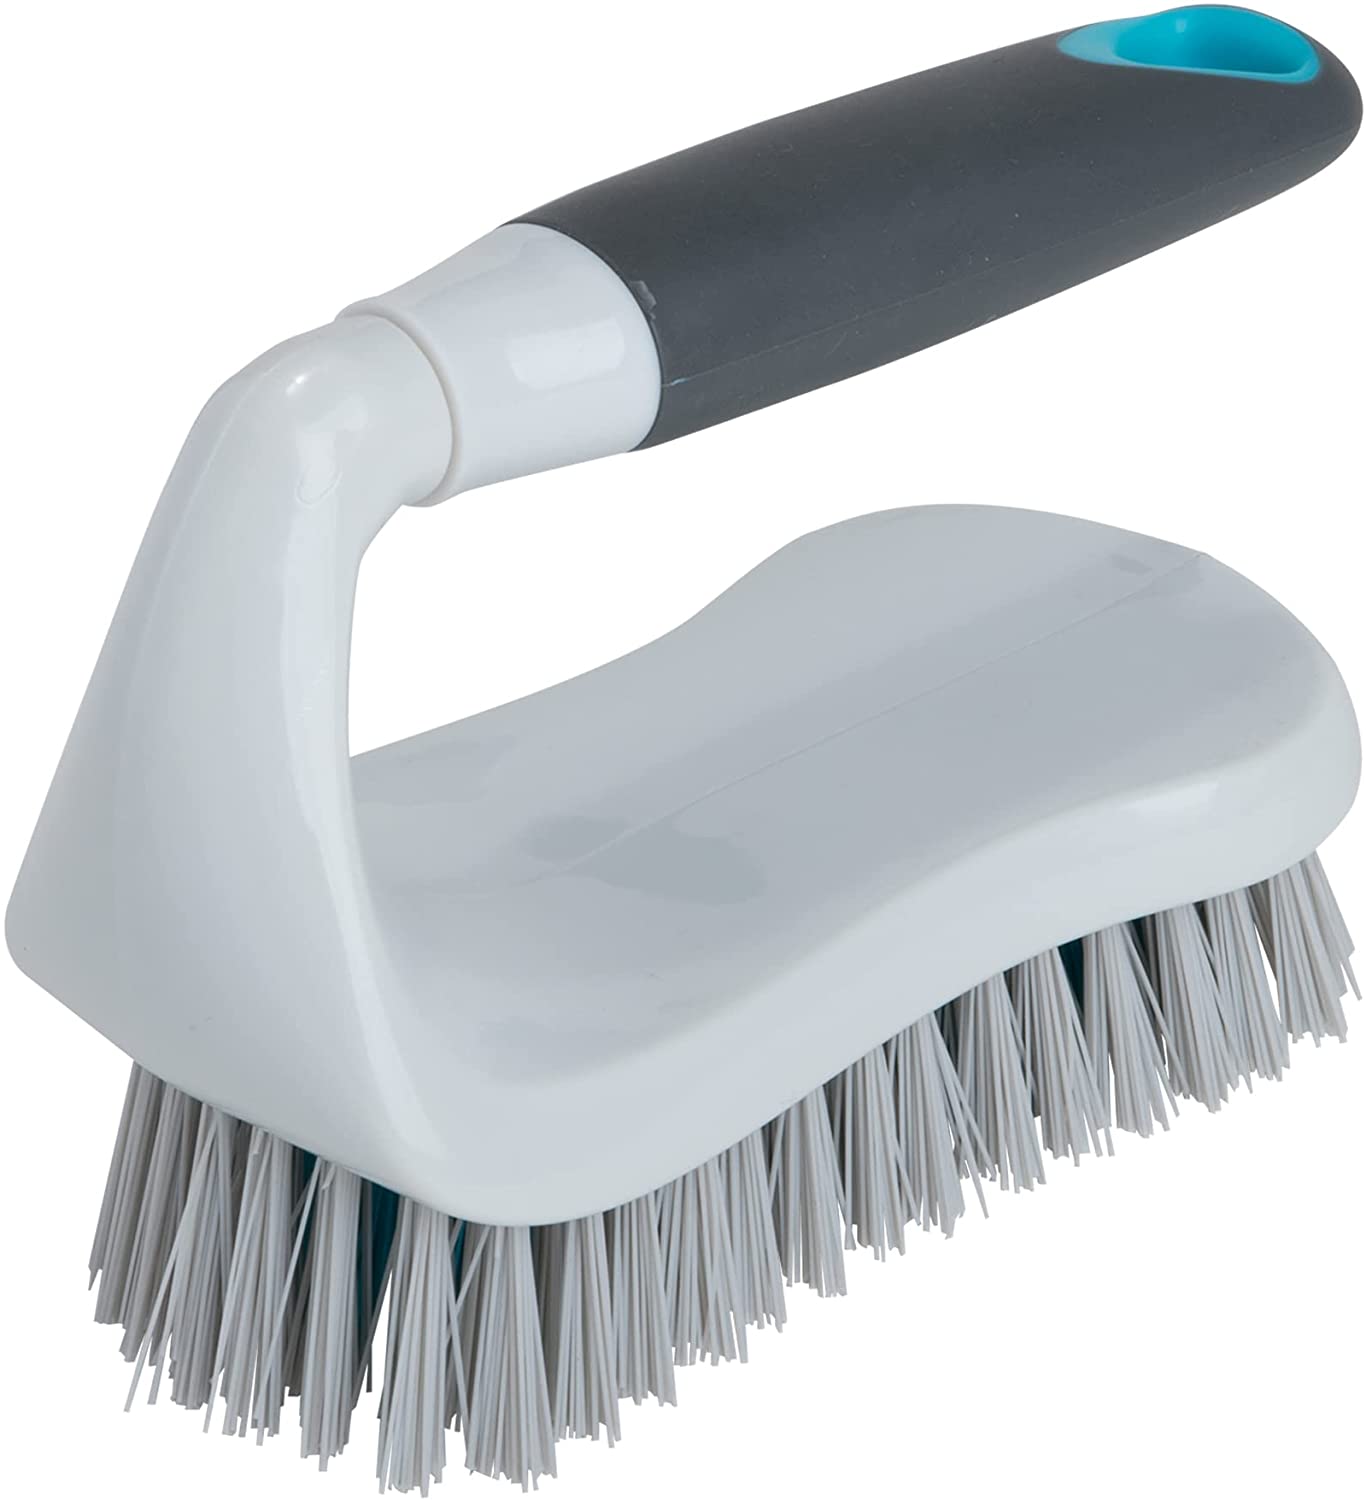 W Home Dish Brush, Multi-purpose Soap Dispensing Scrubber with Nylon  Bristles